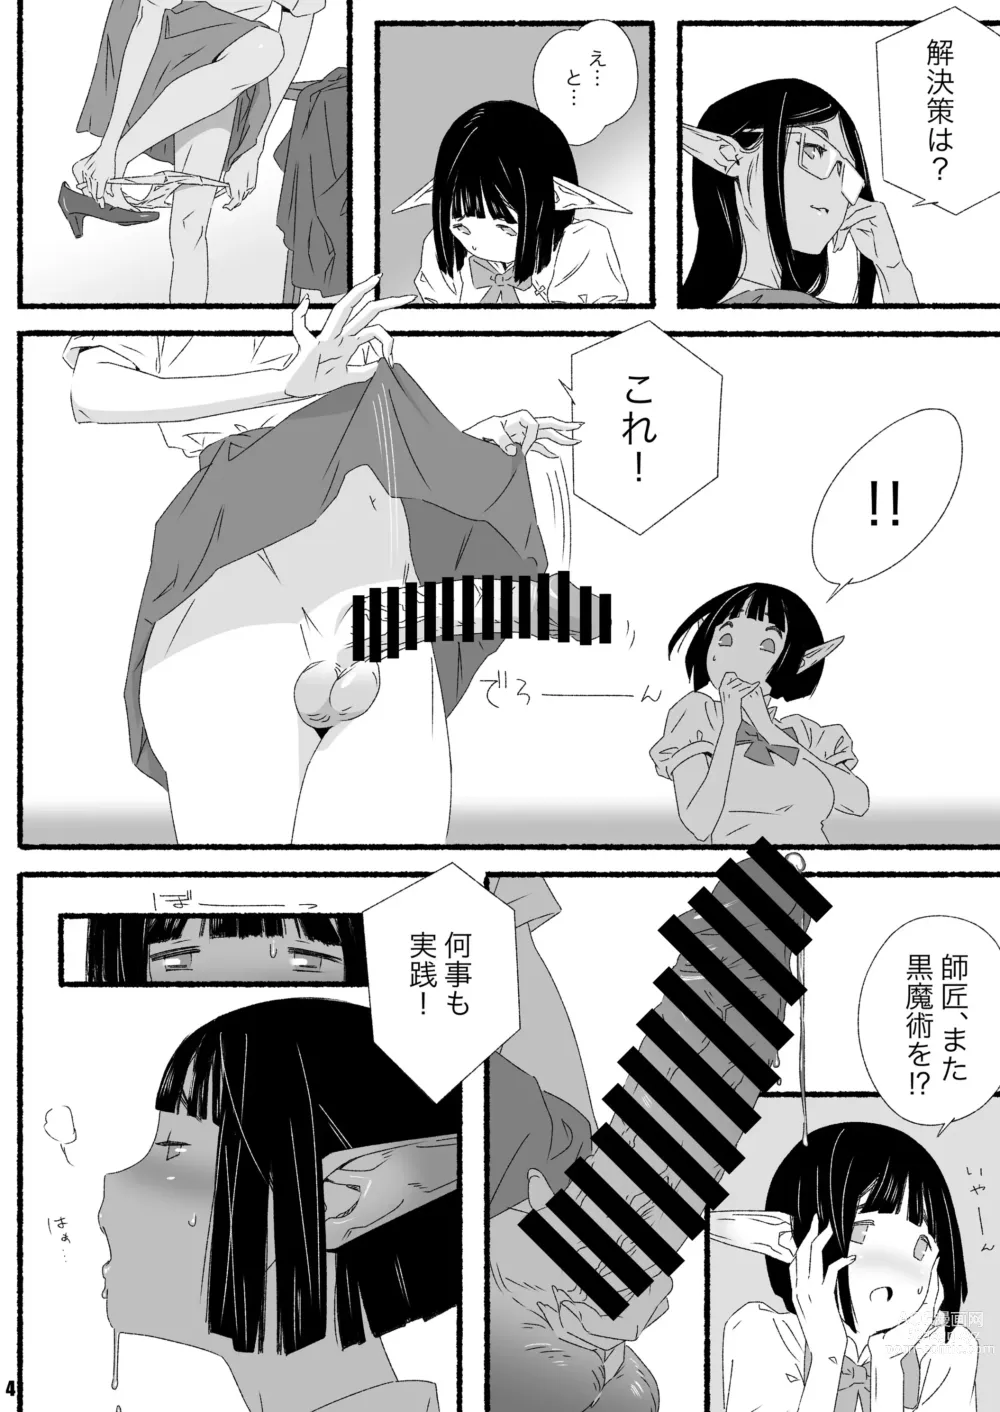 Page 4 of doujinshi Elf-chan no Shusseiritsu Teika ni Okeru Kousatsu to sono Kaiketsusaku no Jissen